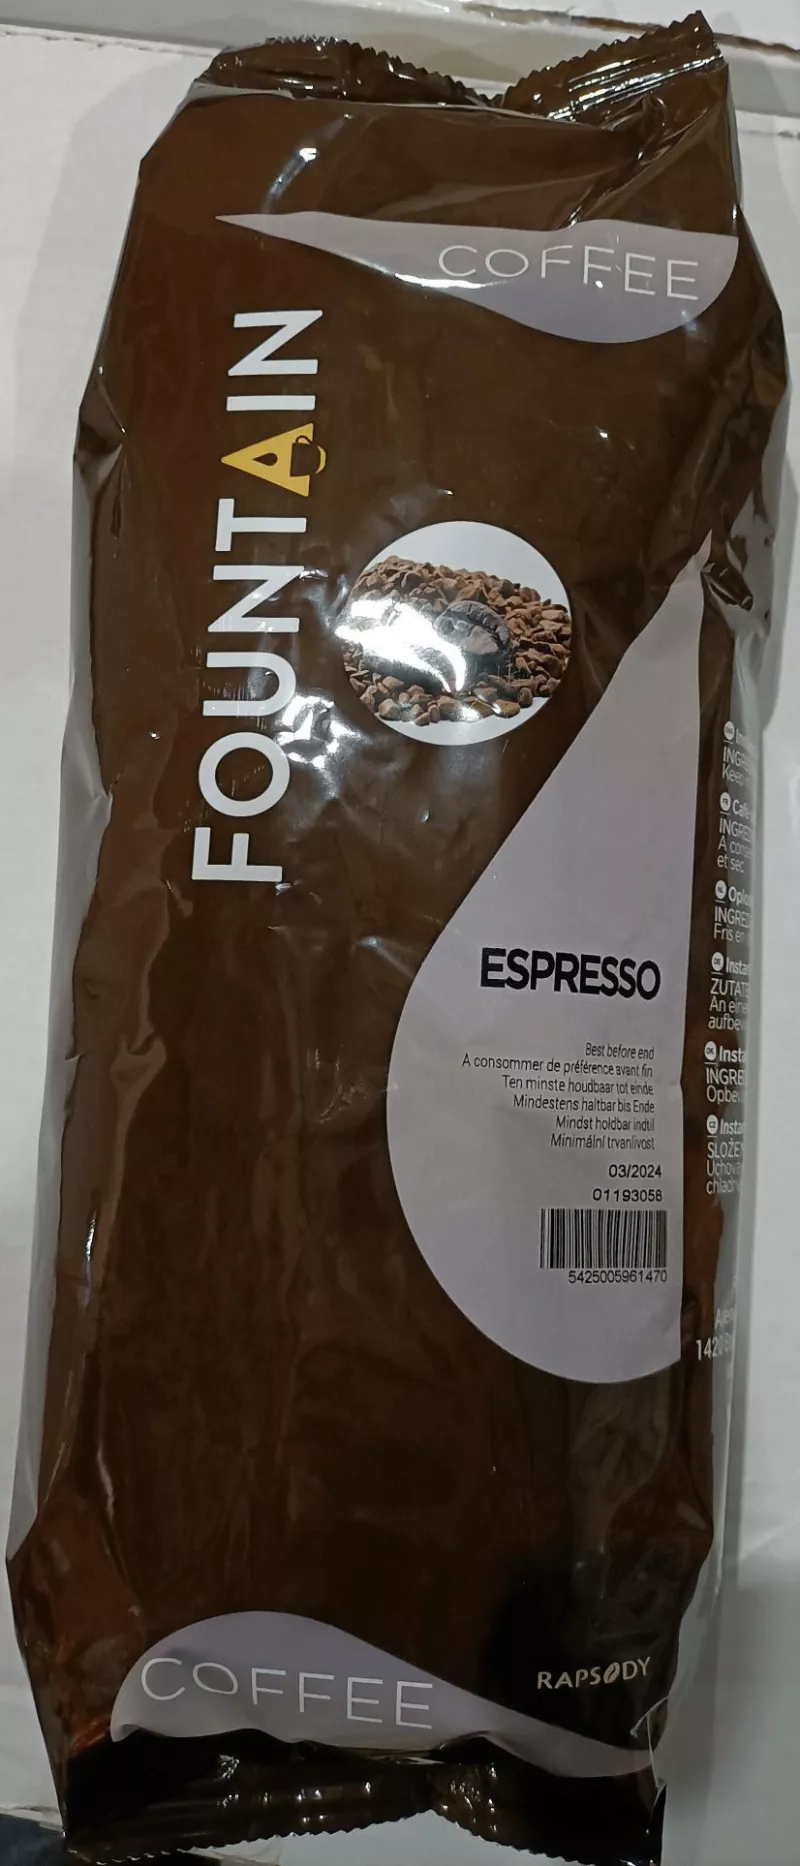 Fountain espresso